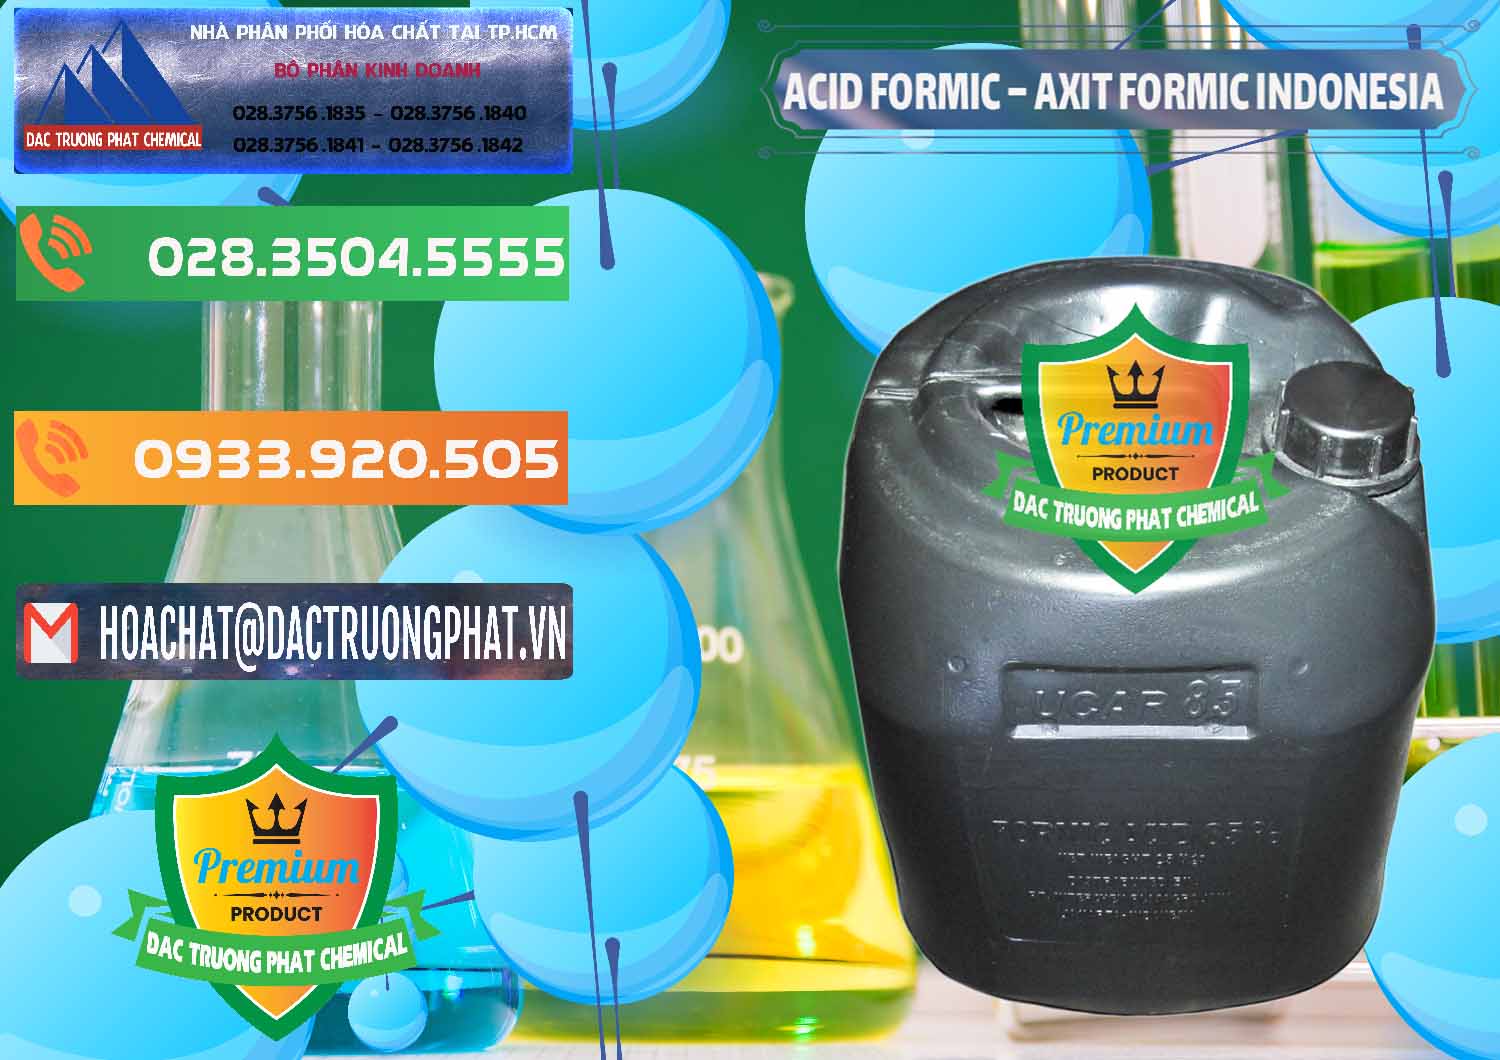 Nơi phân phối & bán Acid Formic - Axit Formic Indonesia - 0026 - Công ty nhập khẩu - cung cấp hóa chất tại TP.HCM - hoachatxulynuoc.com.vn